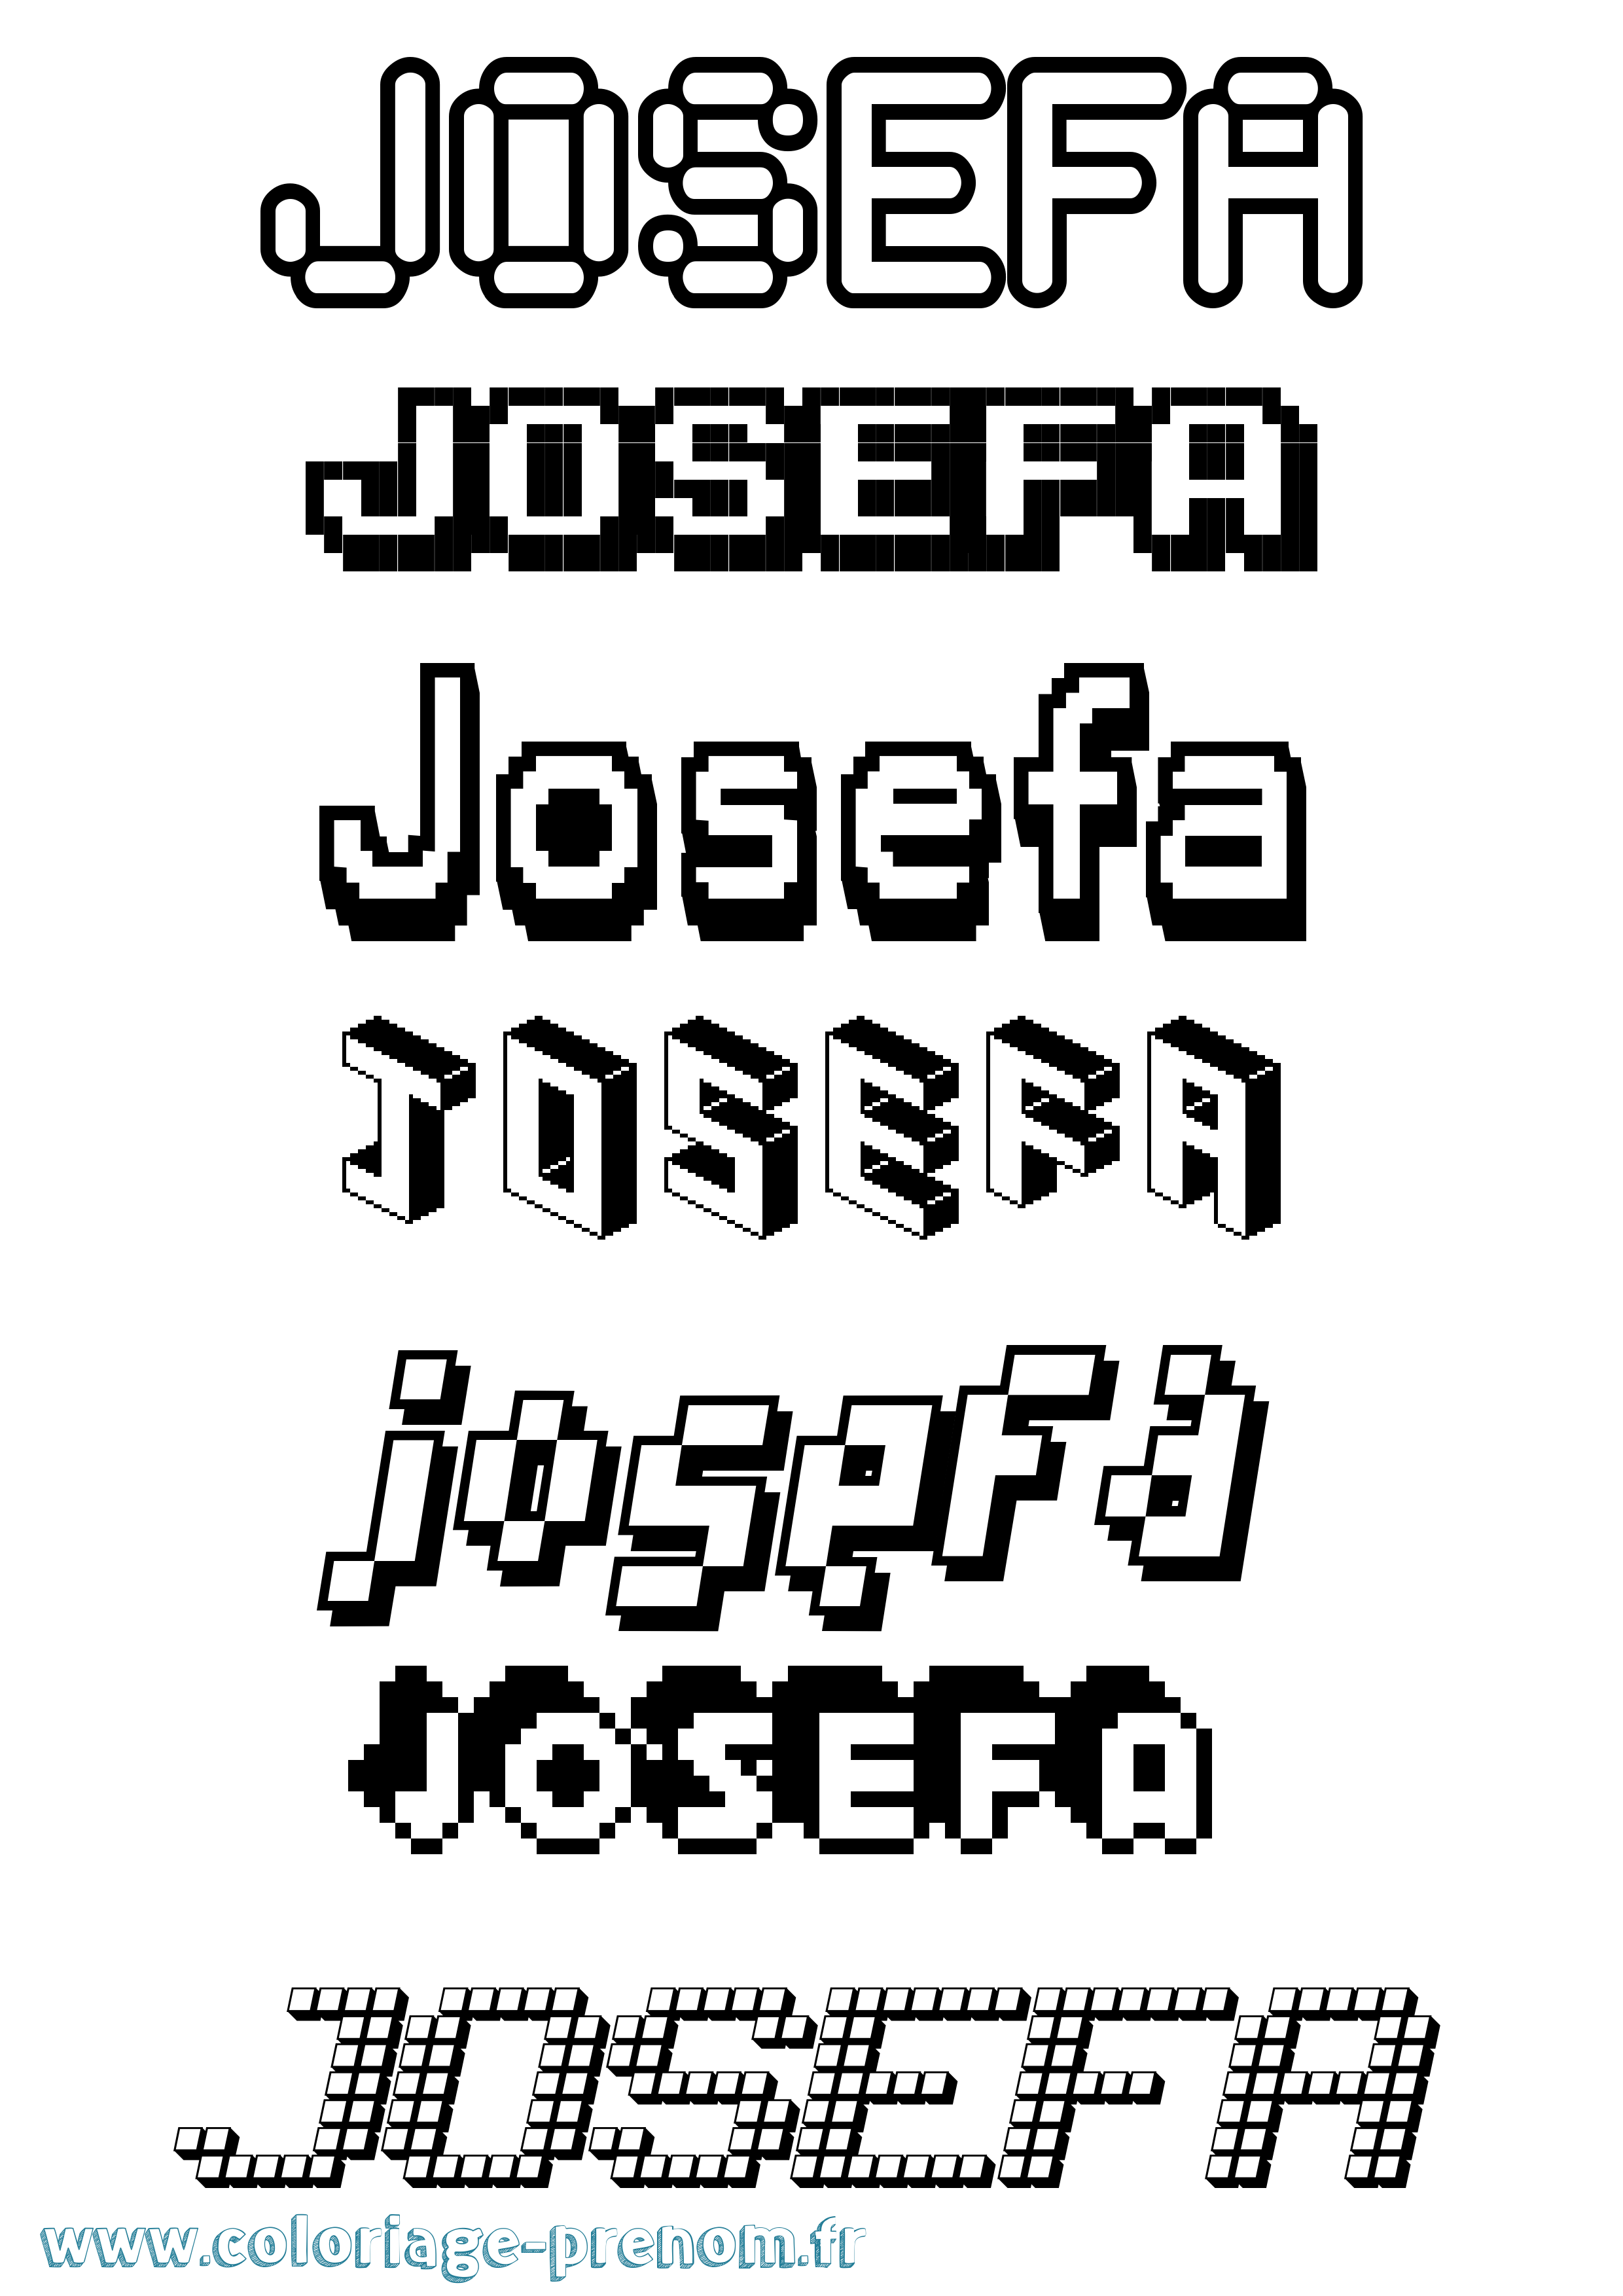 Coloriage prénom Josefa Pixel